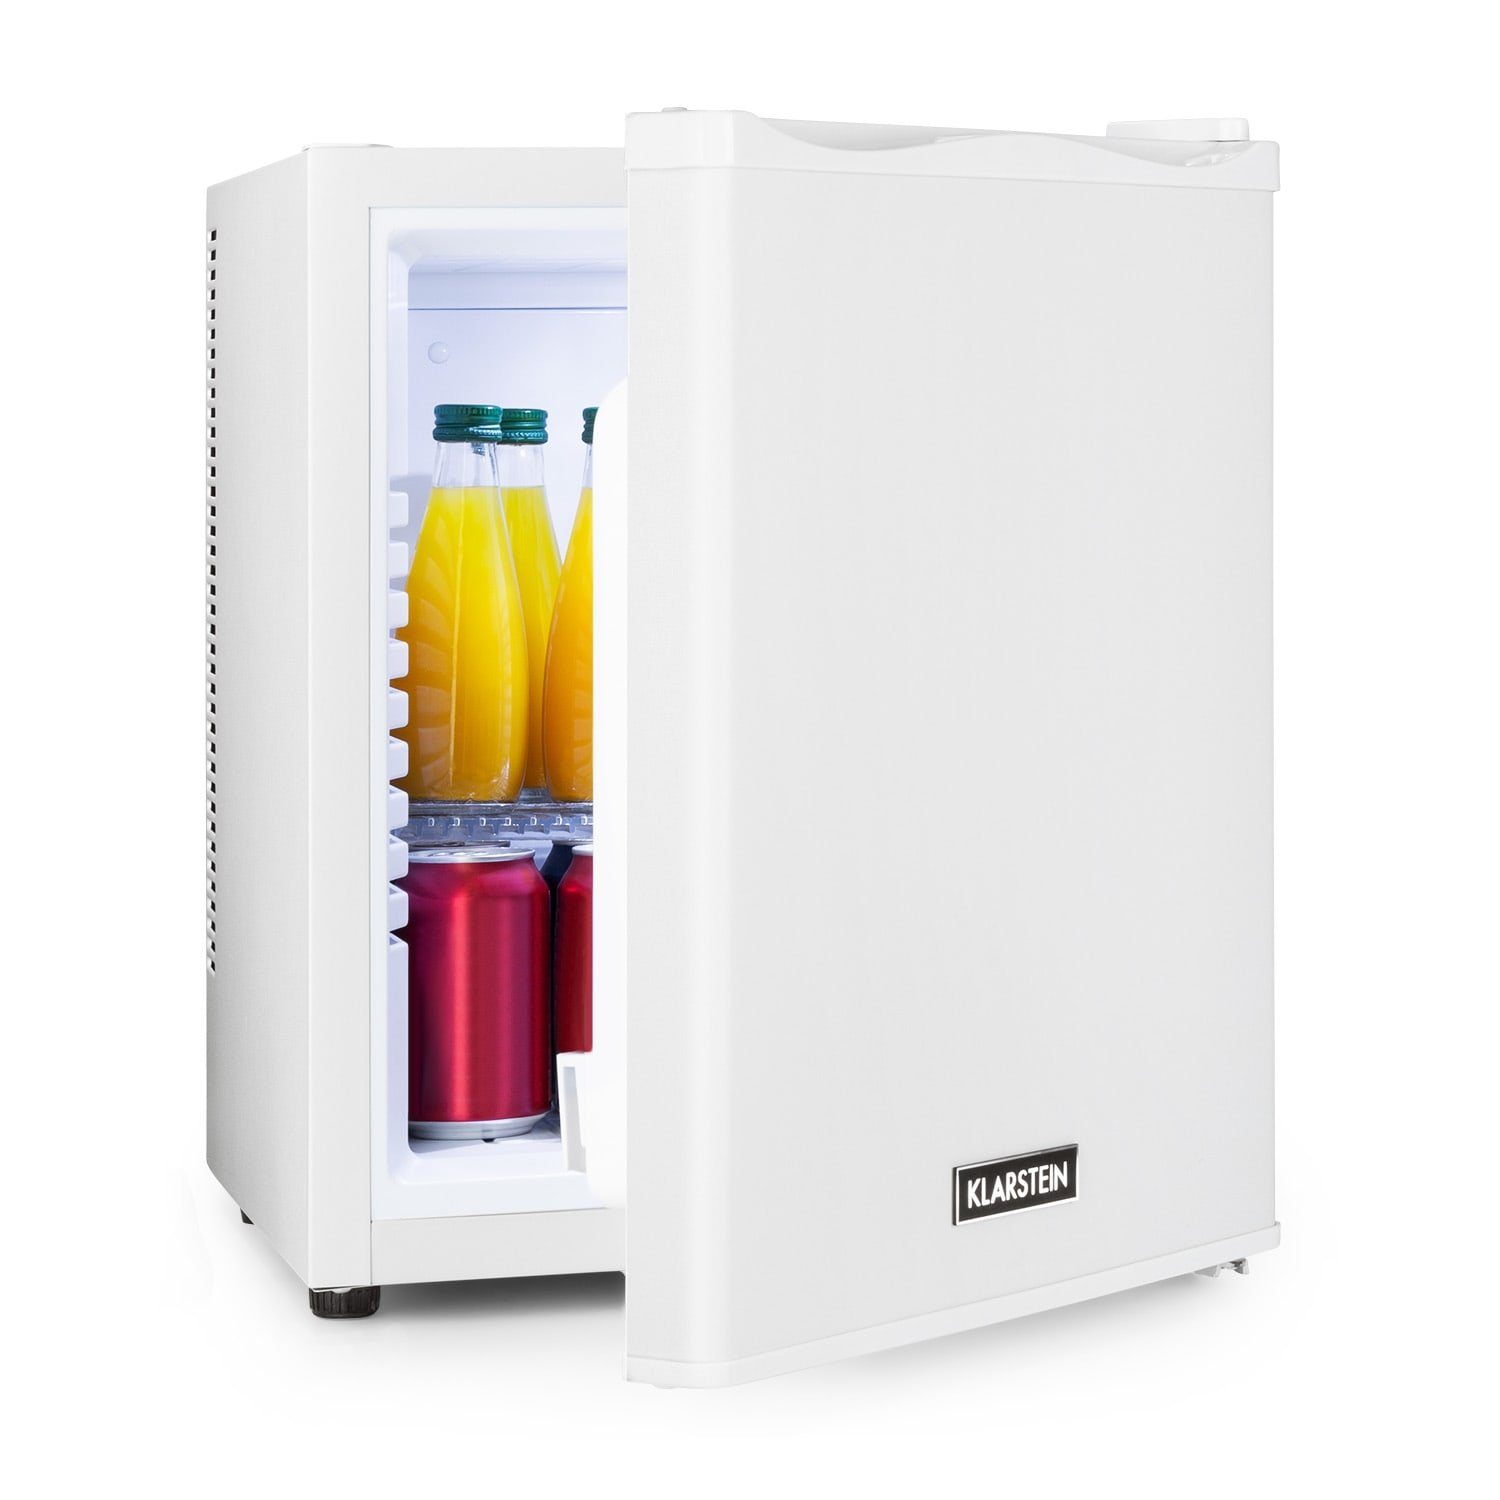 Kompakter Kühlschrank 45ltr & 5ltr Gefrierfach Kleiner Kühlschrank freistehend 